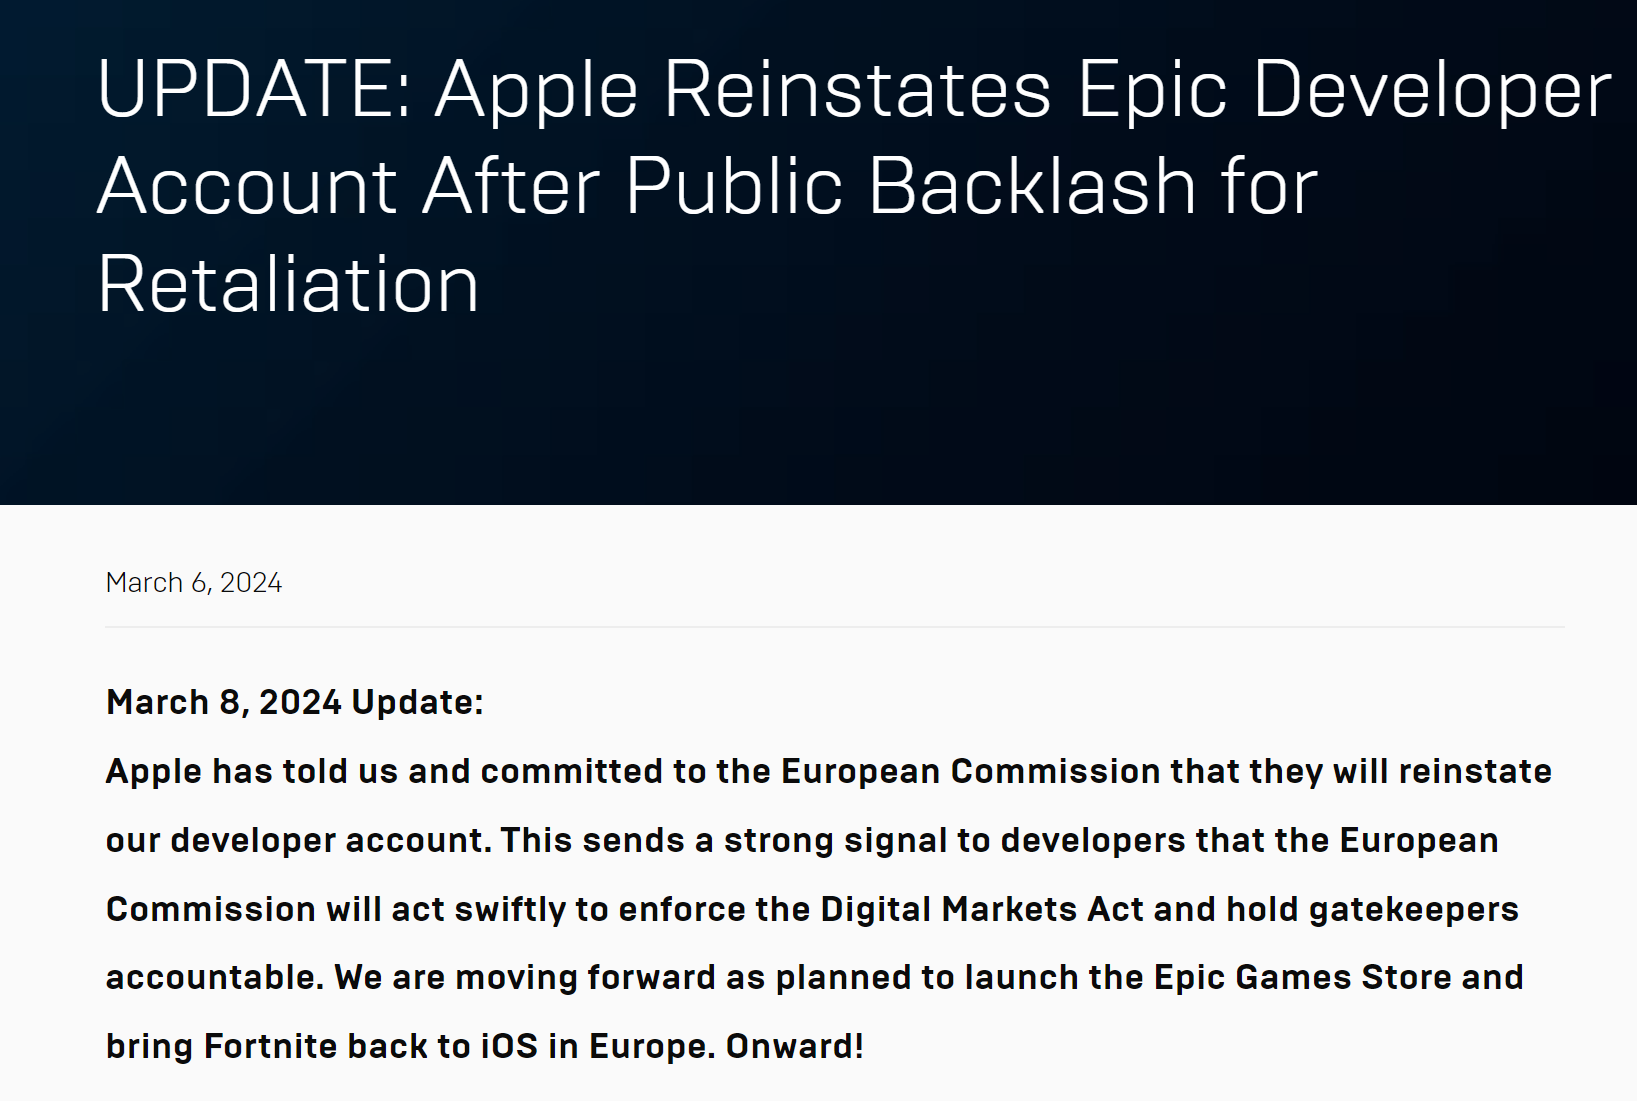 反转再反转！在欧盟施压下，苹果将恢复刚被禁的Epic账号